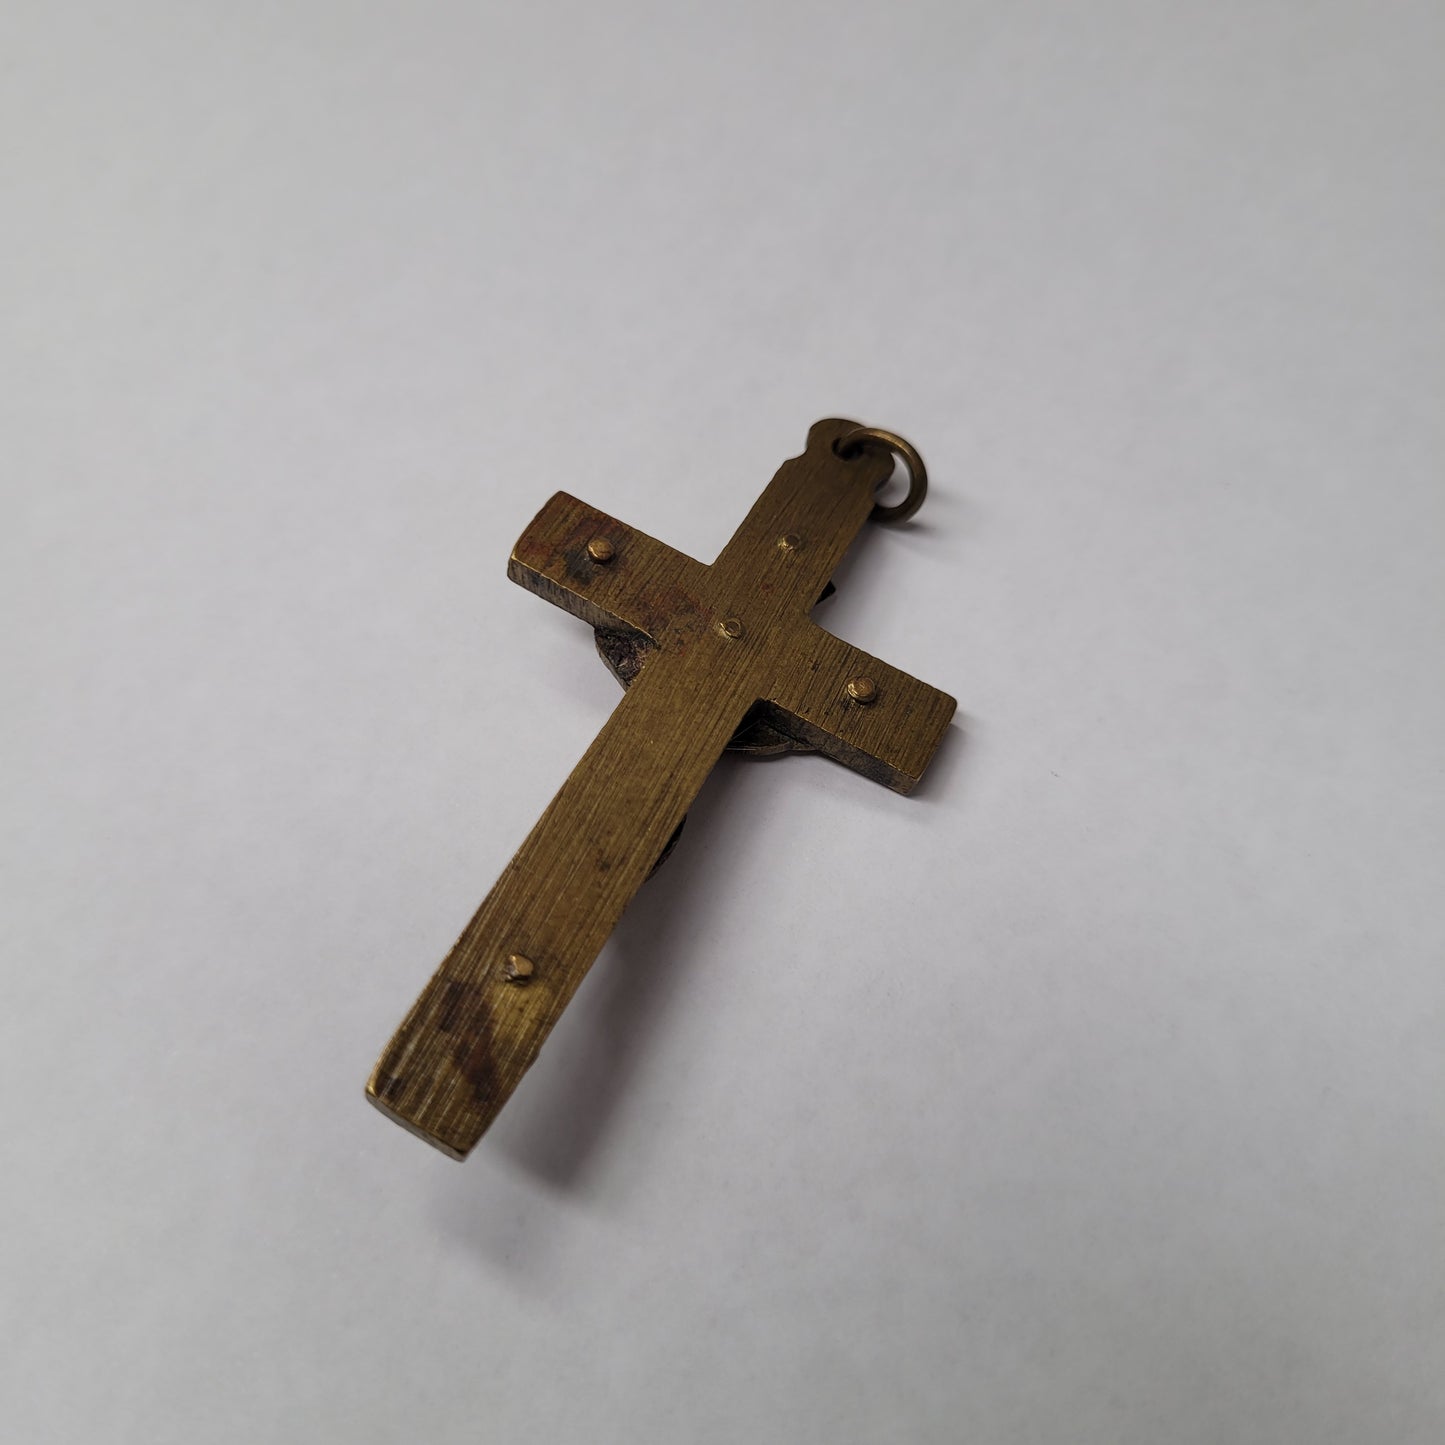 Vintage Brass Crucifix